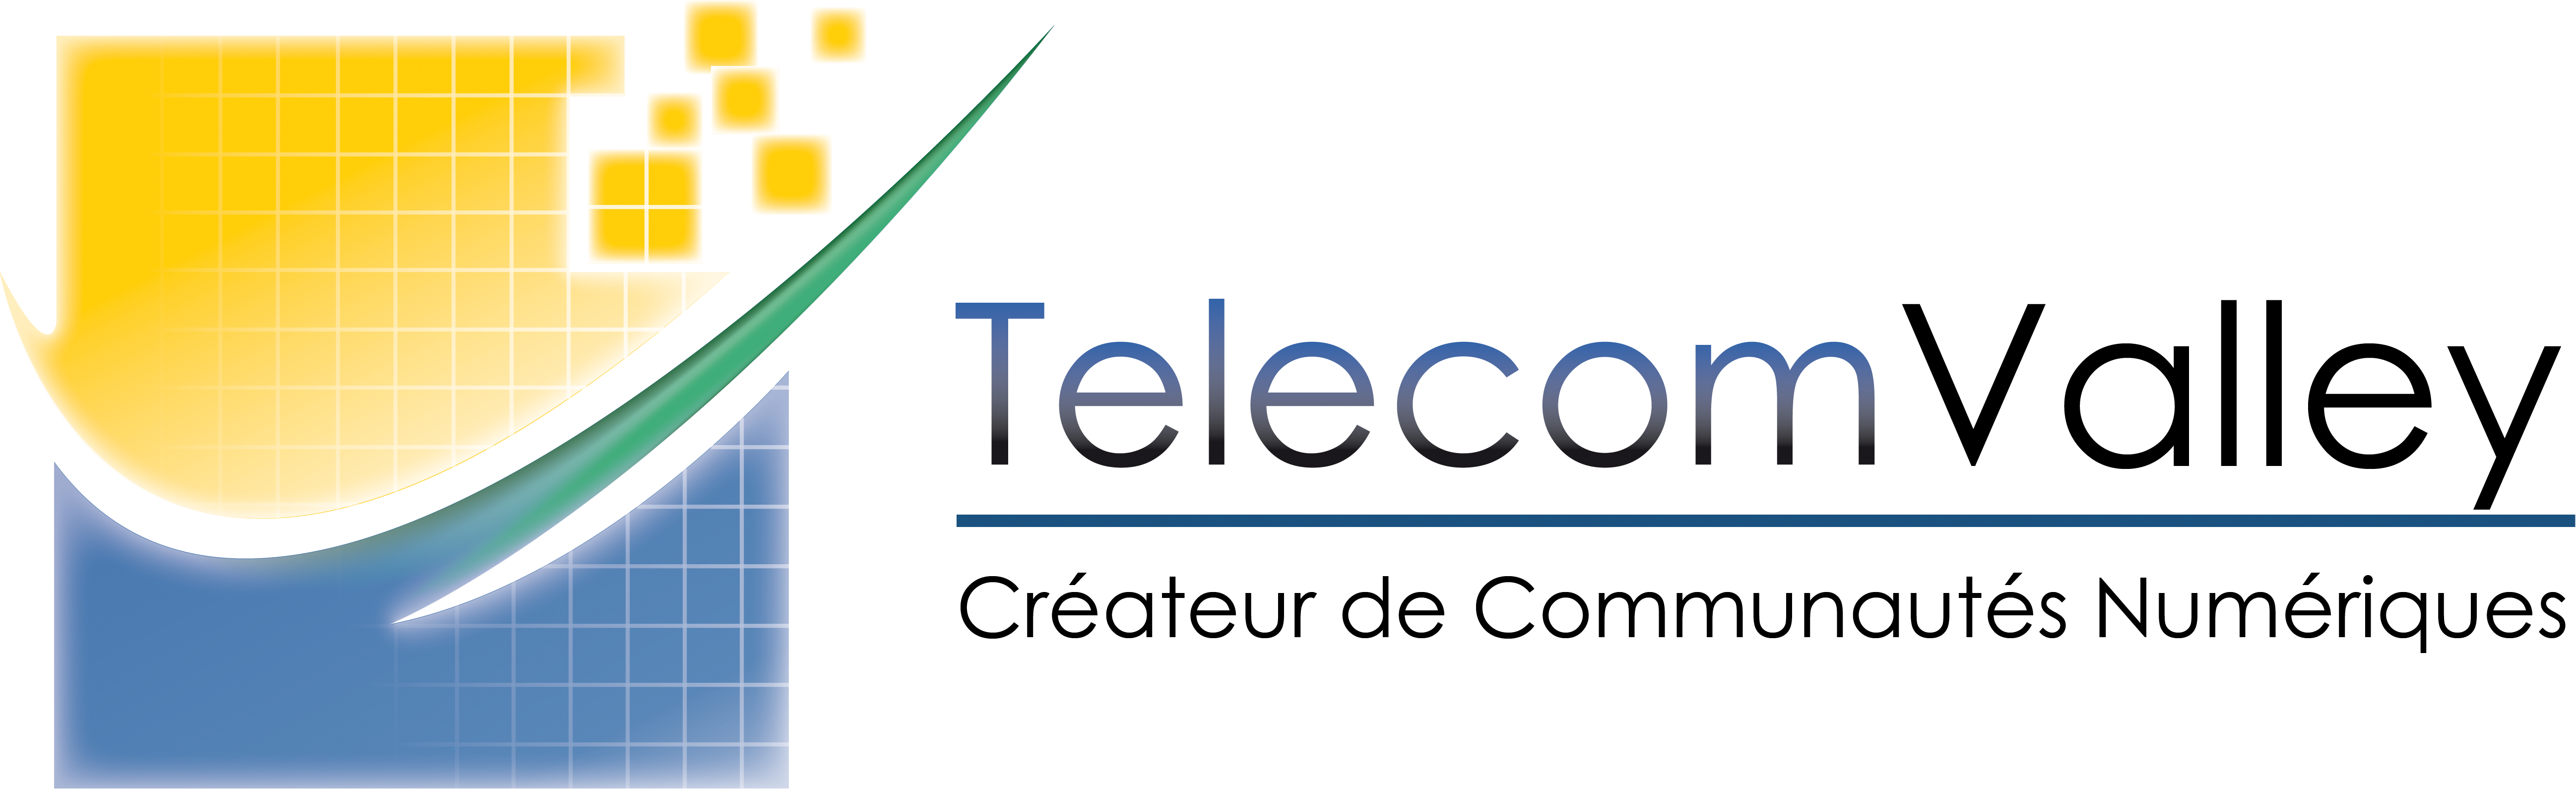 Telecom-Valley - Partenaire Logistique & Média